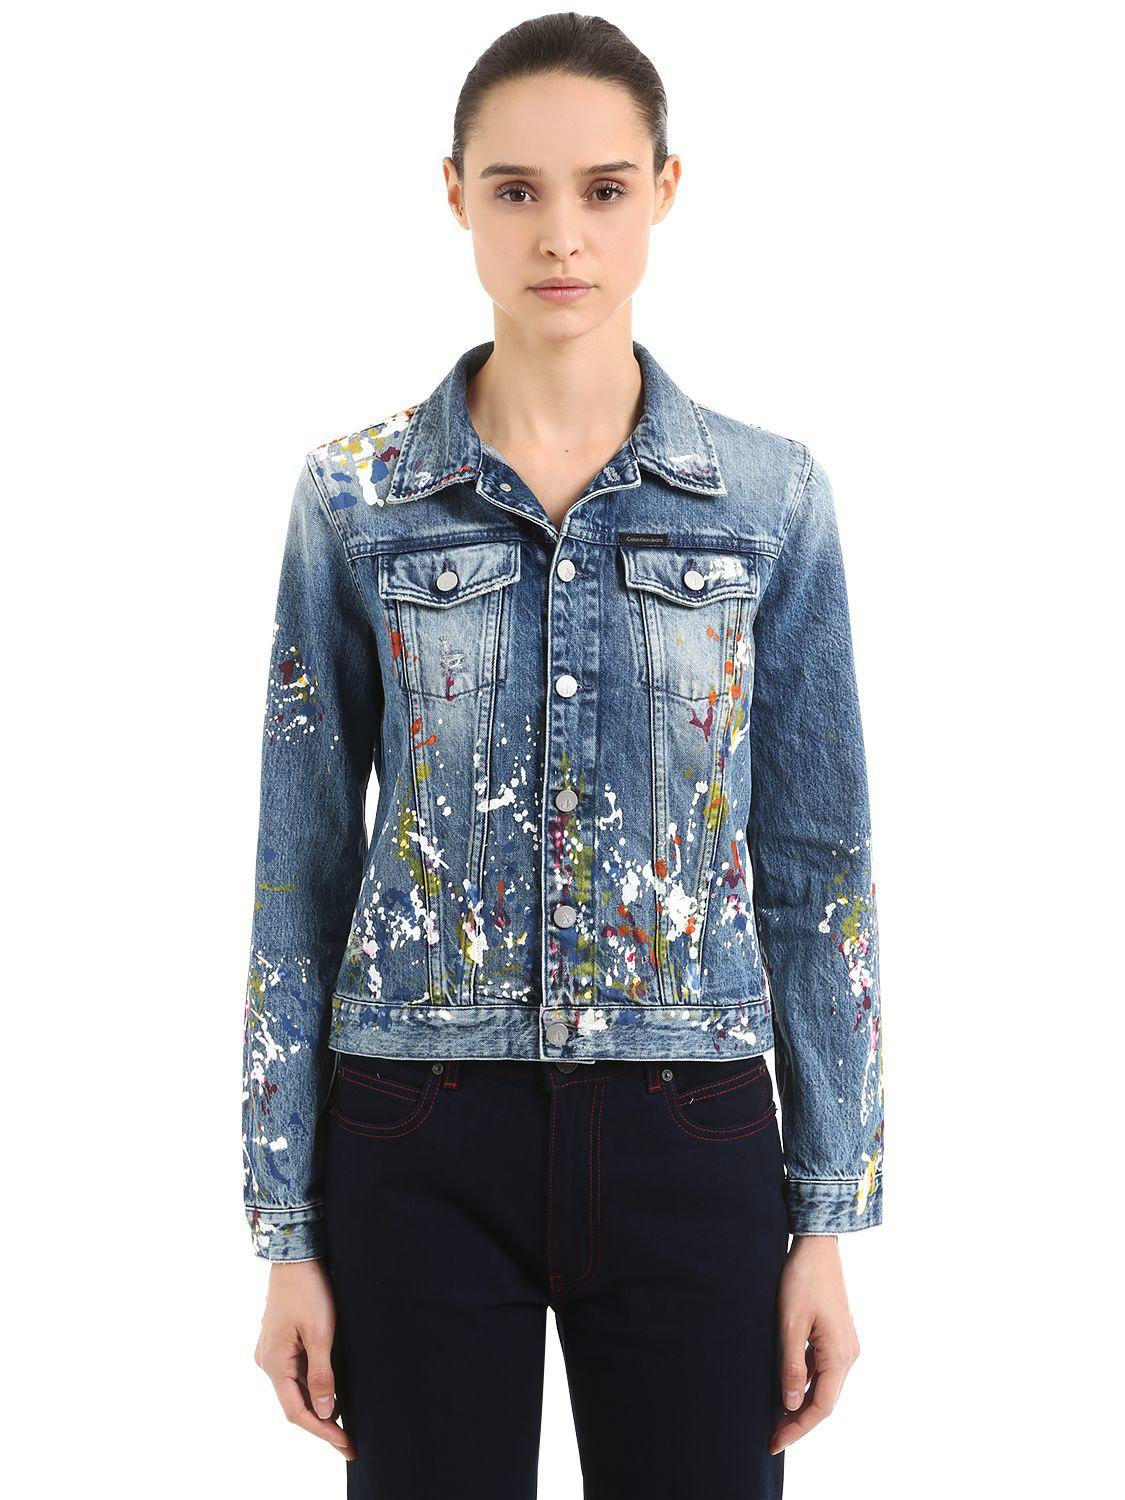 Calvin Klein Paint Splatter Jacket Outlet Sale, Save 57% | jlcatj.gob.mx